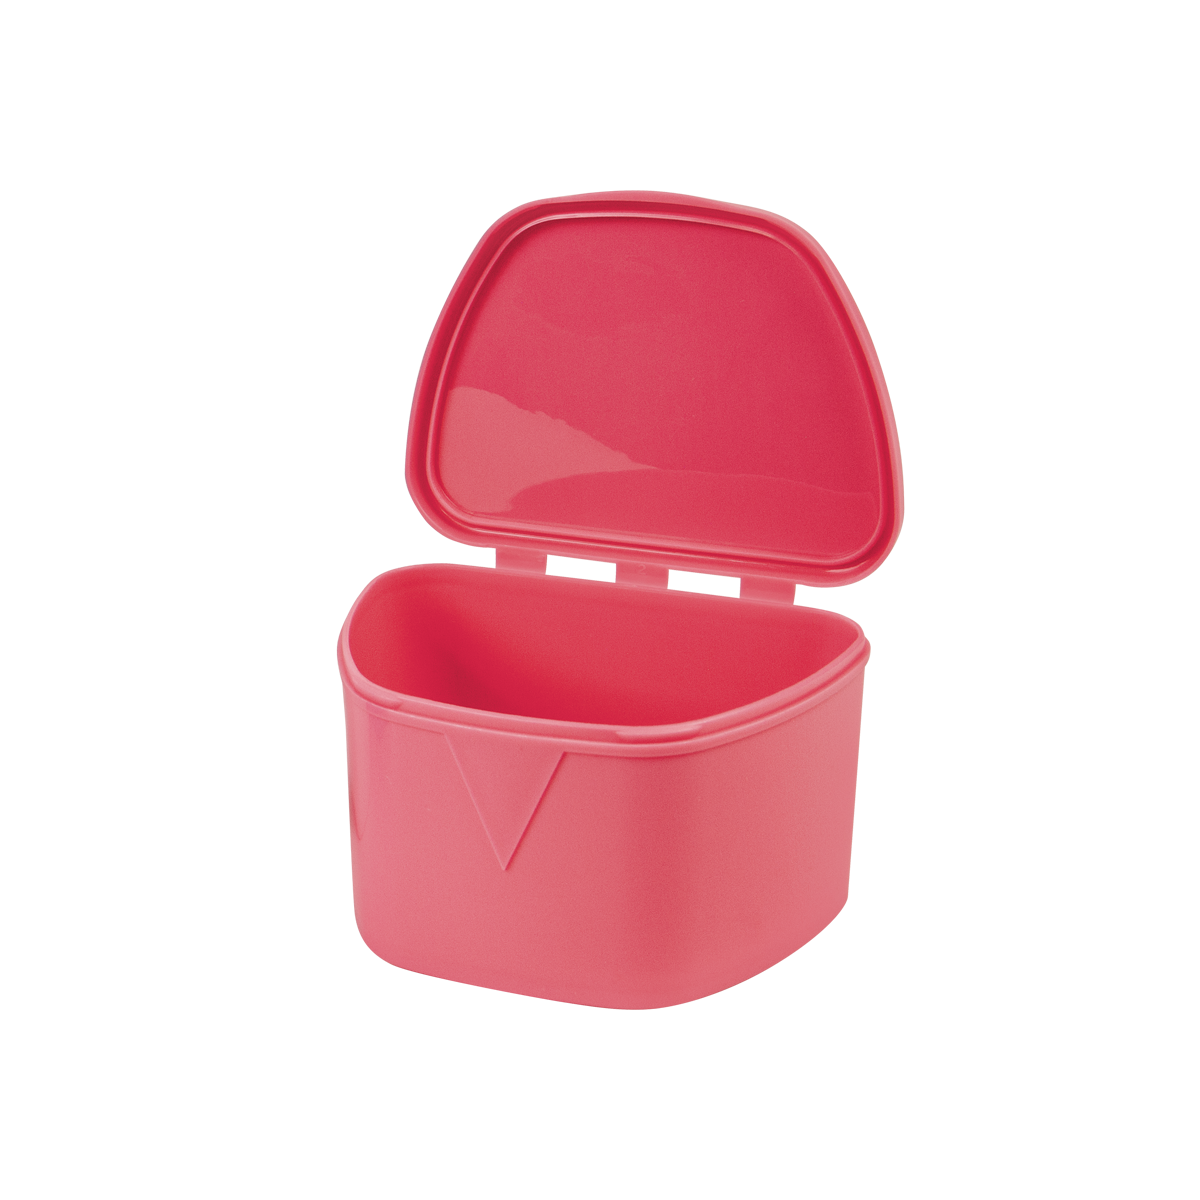 Pink Denture Box